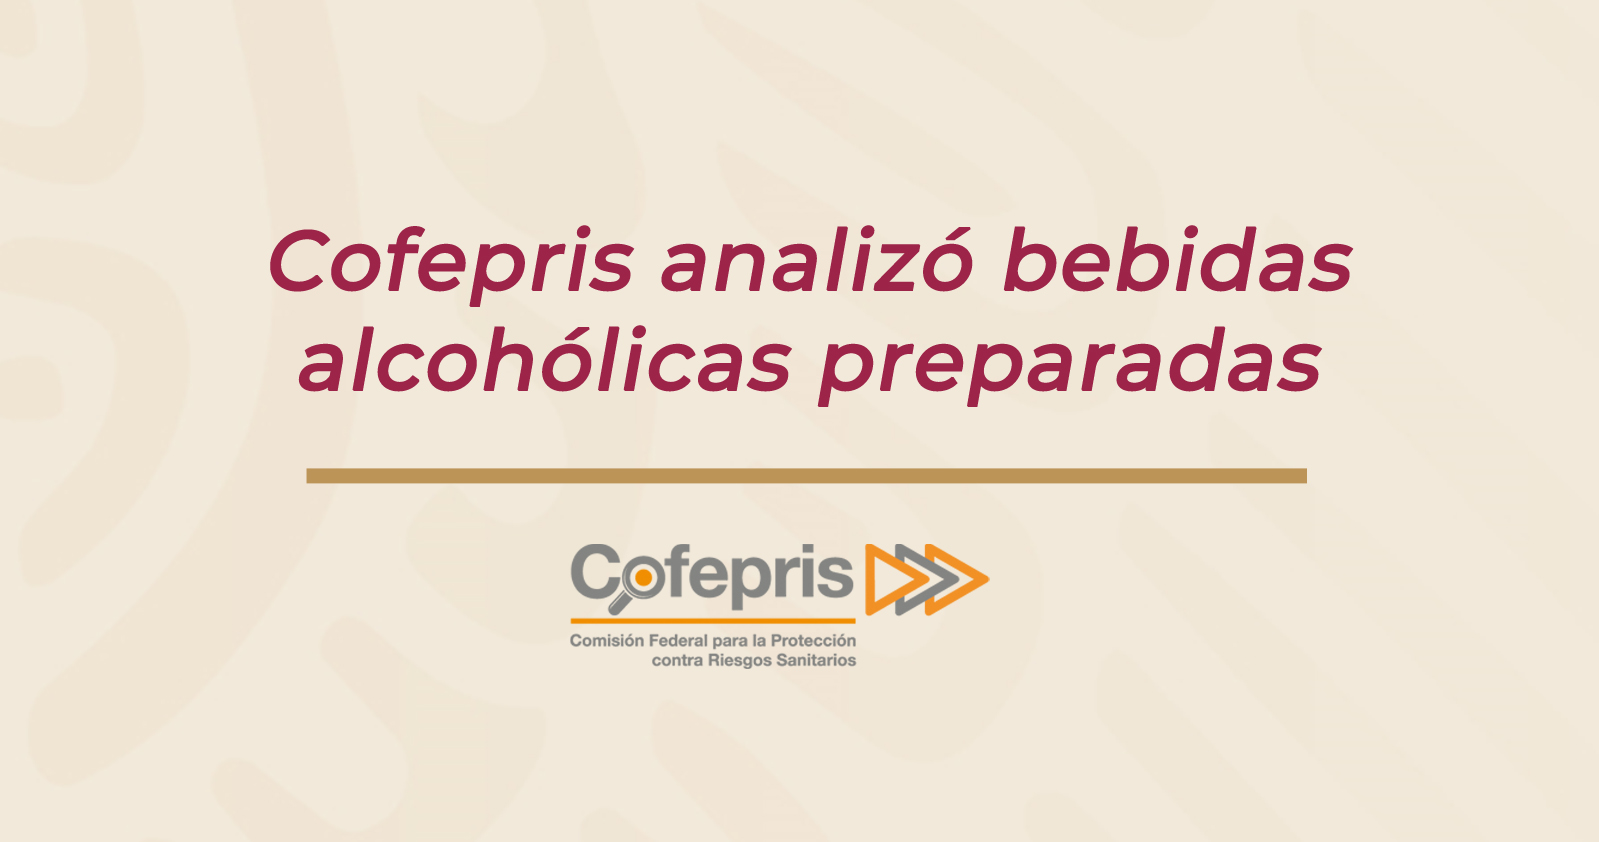 Cofepris analizó bebidas alcohólicas preparadas